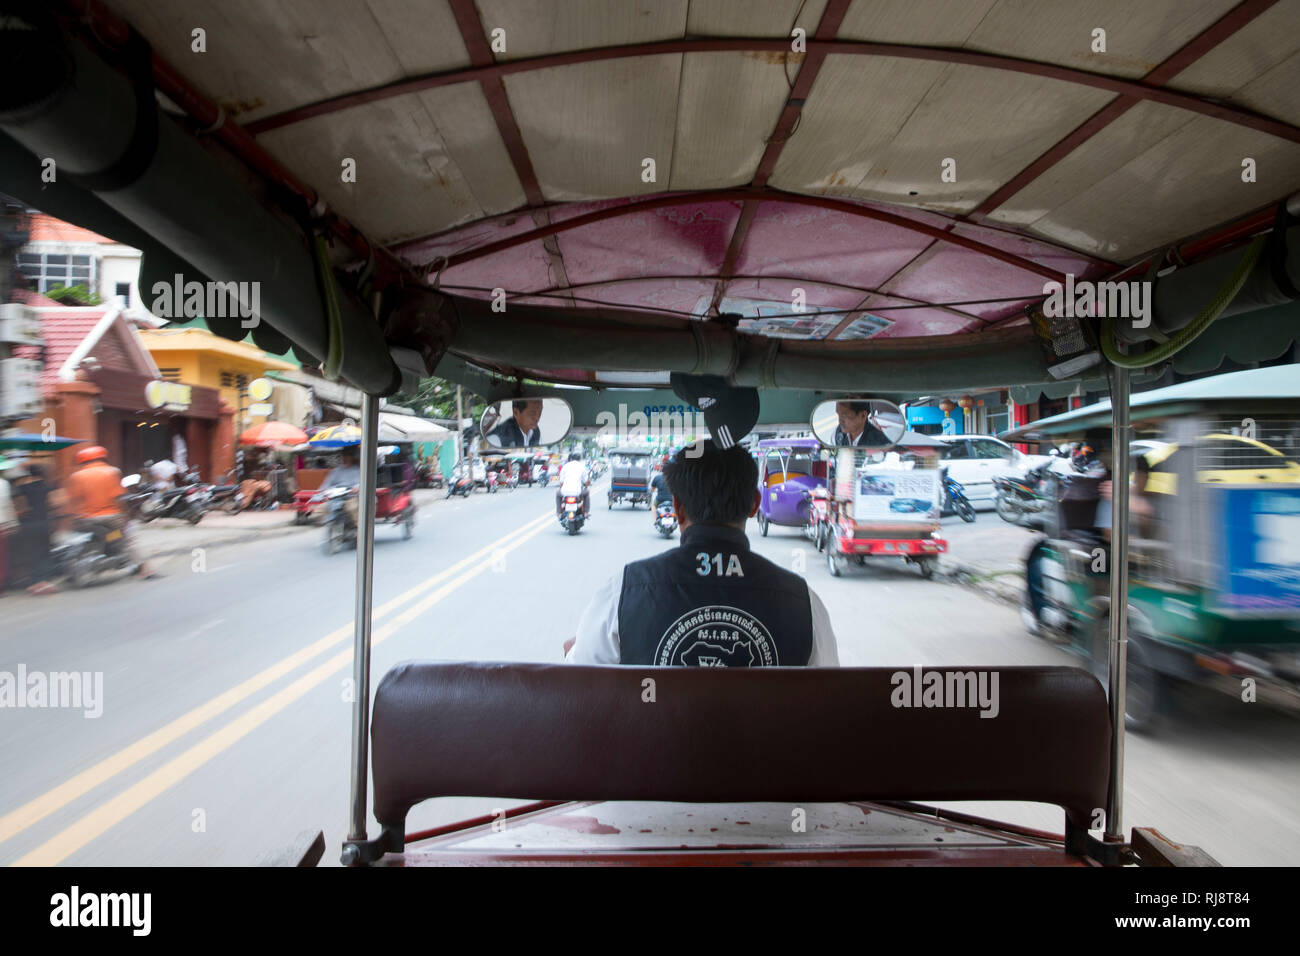 Kambodscha, Phnom Penh, Straßenszene, Fahrt in einem Tuk Tuk Taxi Foto Stock